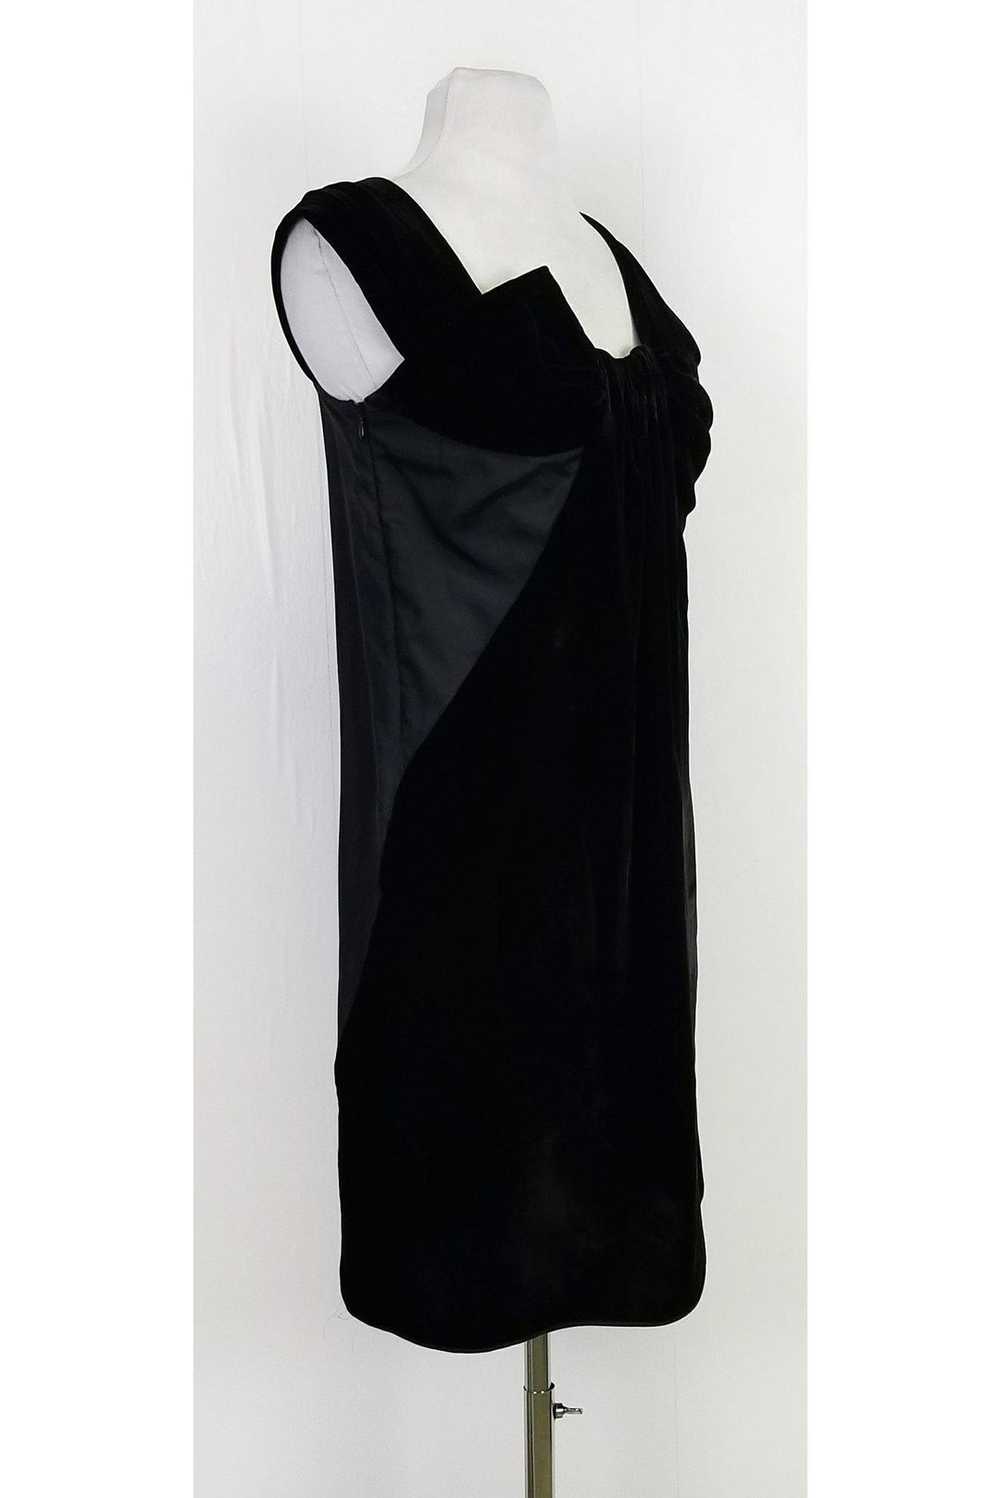 Miu Miu - Black Silk & Velvet Dress Sz 4 - image 2